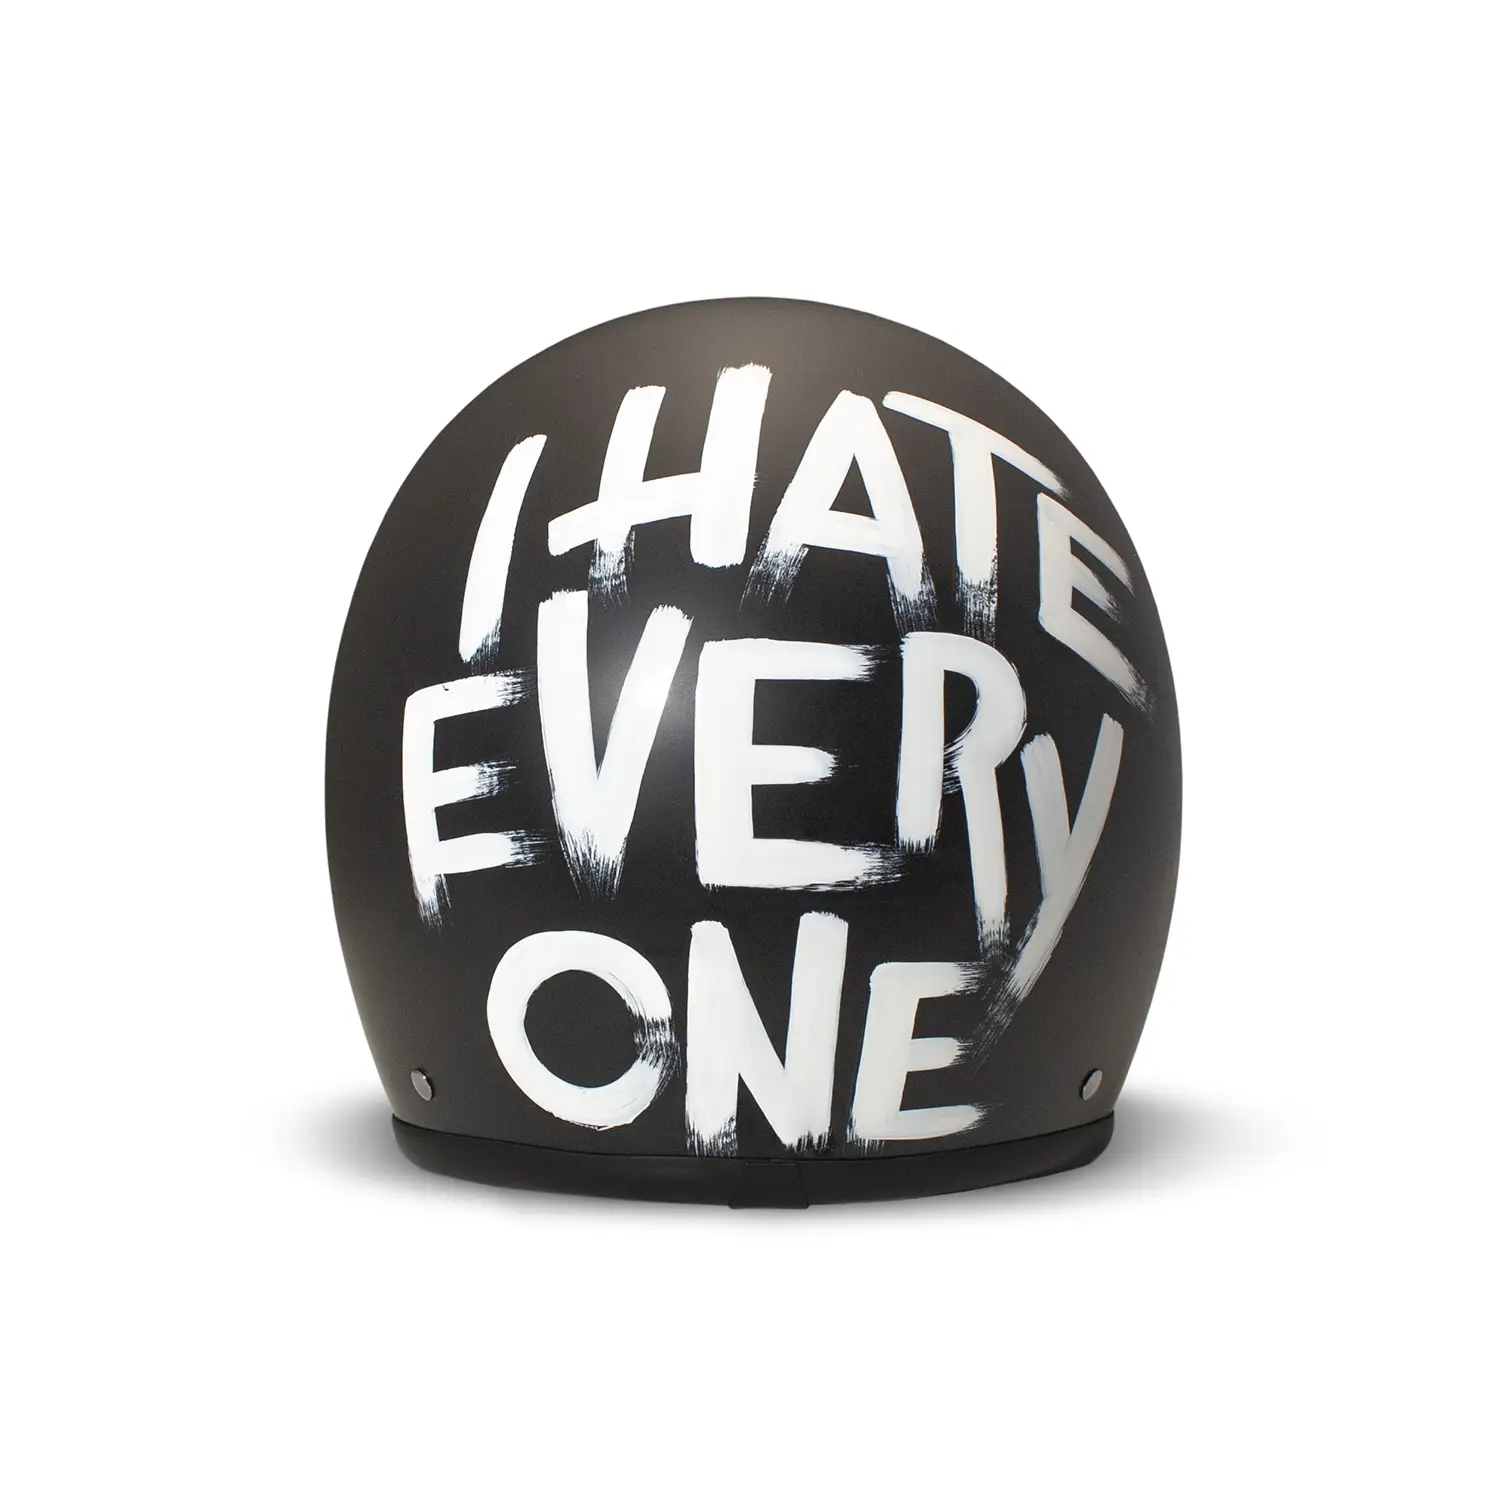 dmd.eu - I HATE EVERYONE DMD – Retro I HATE EVERYONE – rear